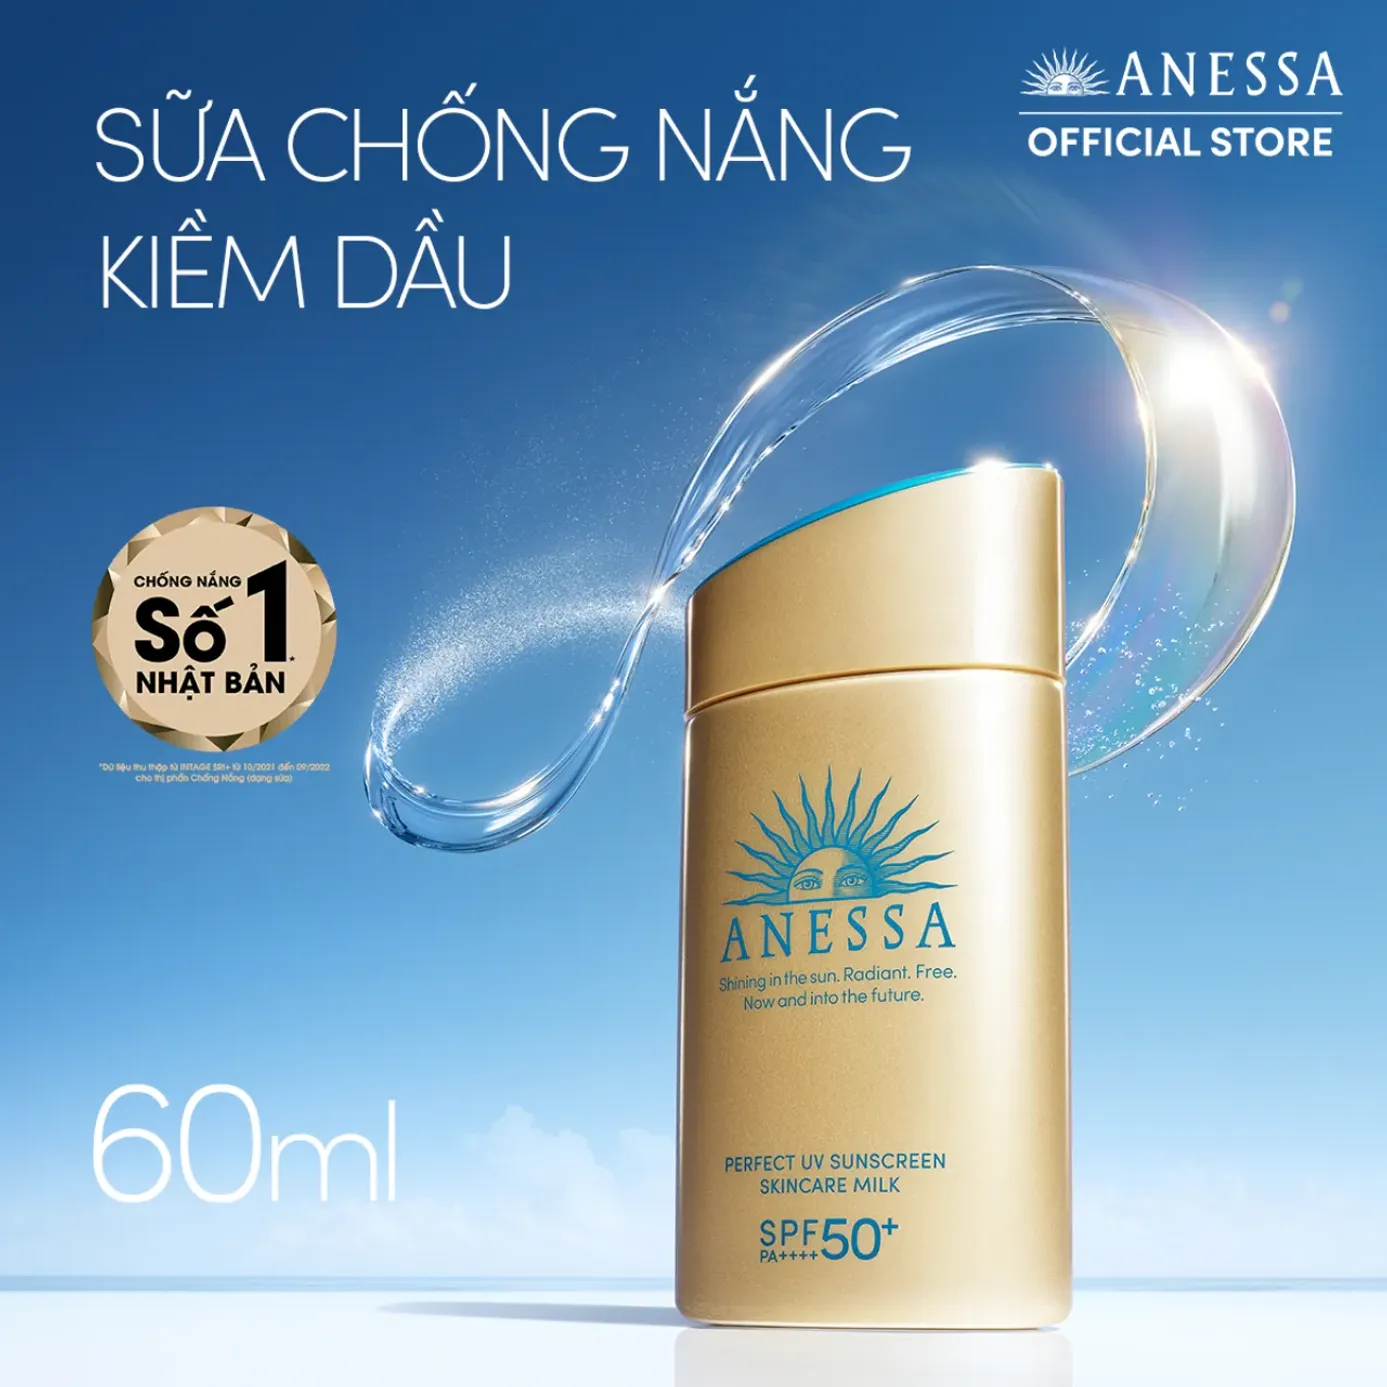 Sữa Chống Nắng Dưỡng Da Kiềm Dầu Anessa Perfect Uv Sunscreen Skincare Milk  Spf50 Pa++++ (60Ml)